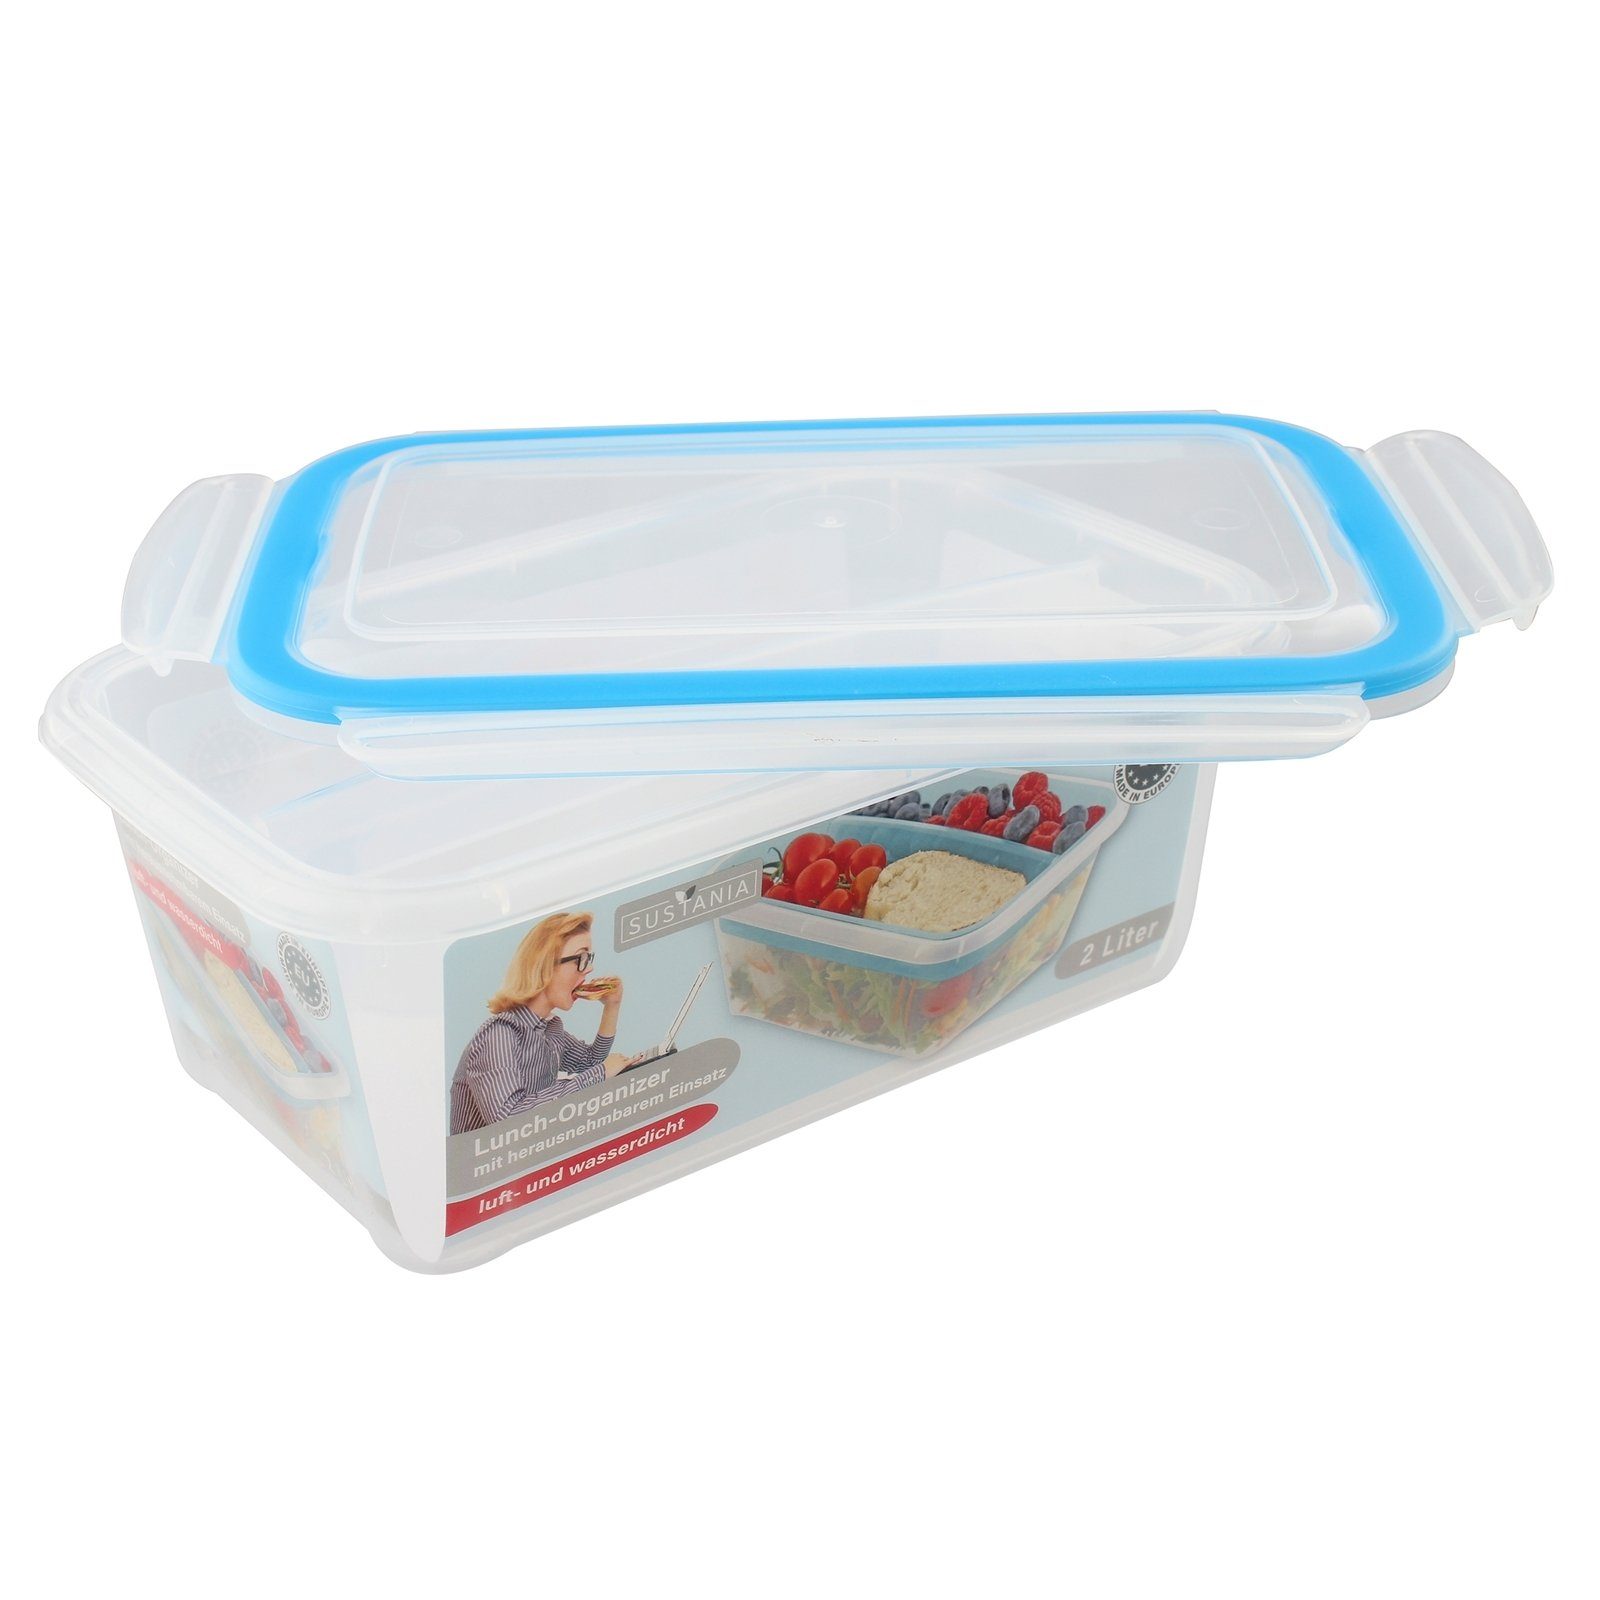 Neuetischkultur Frischhaltedose Lunchbox mit Einsatz Sustania, Kunststoff, mit Trennwand